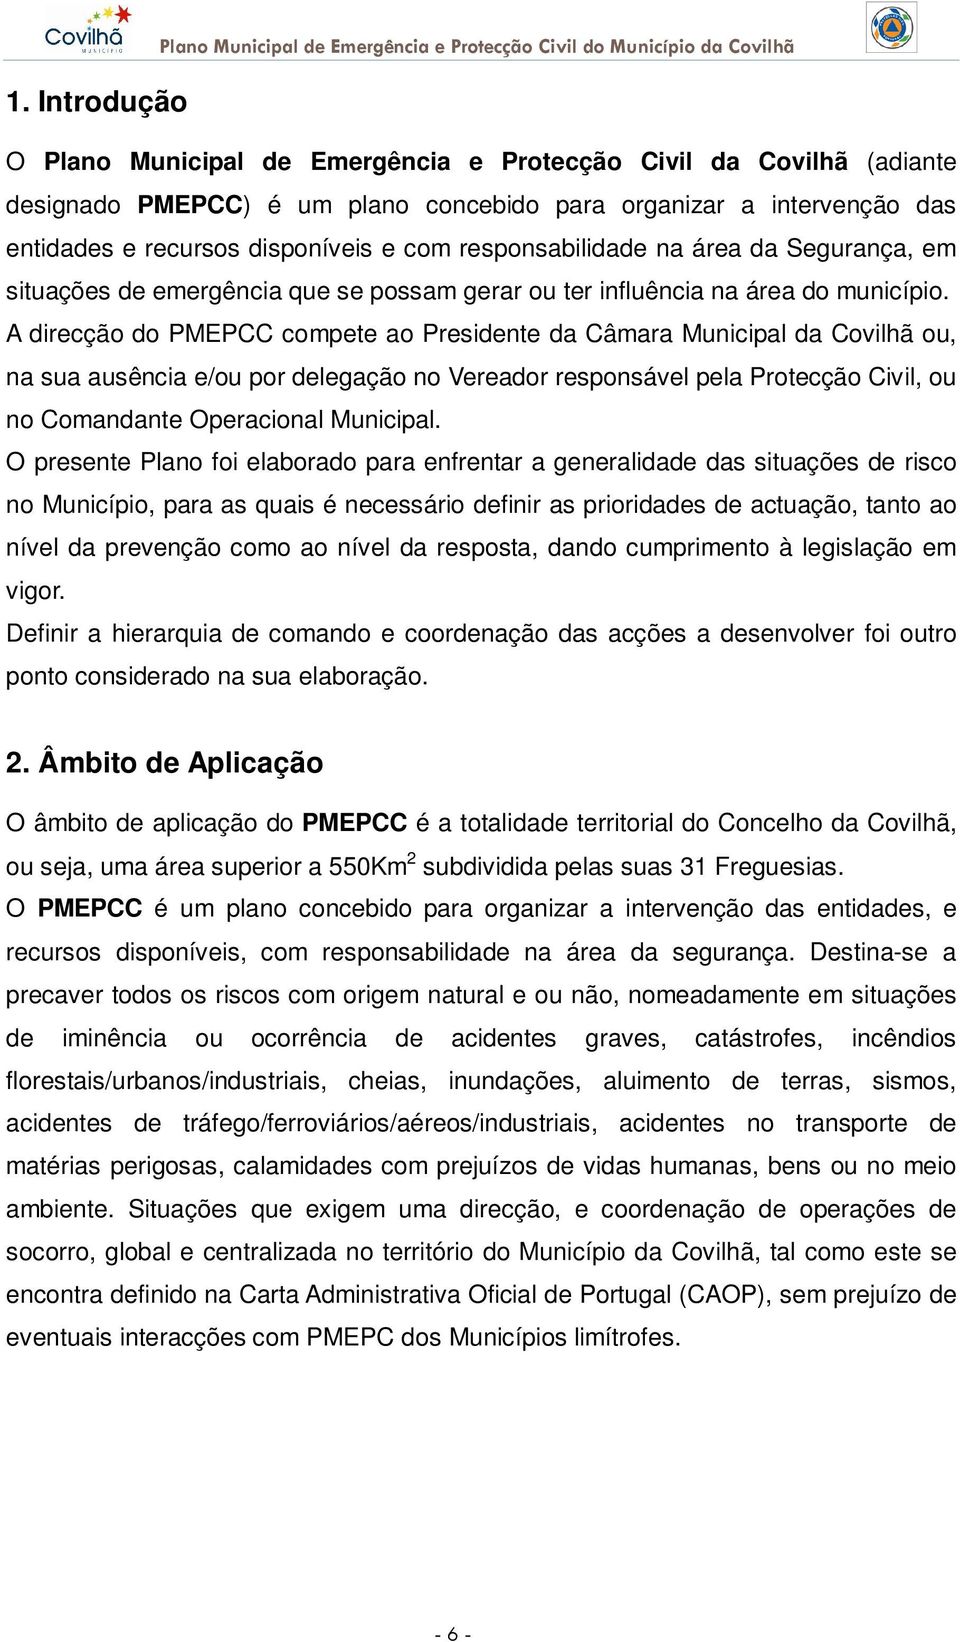 A direcção do PMEPCC compete ao Presidente da Câmara Municipal da Covilhã ou, na sua ausência e/ou por delegação no Vereador responsável pela Protecção Civil, ou no Comandante Operacional Municipal.